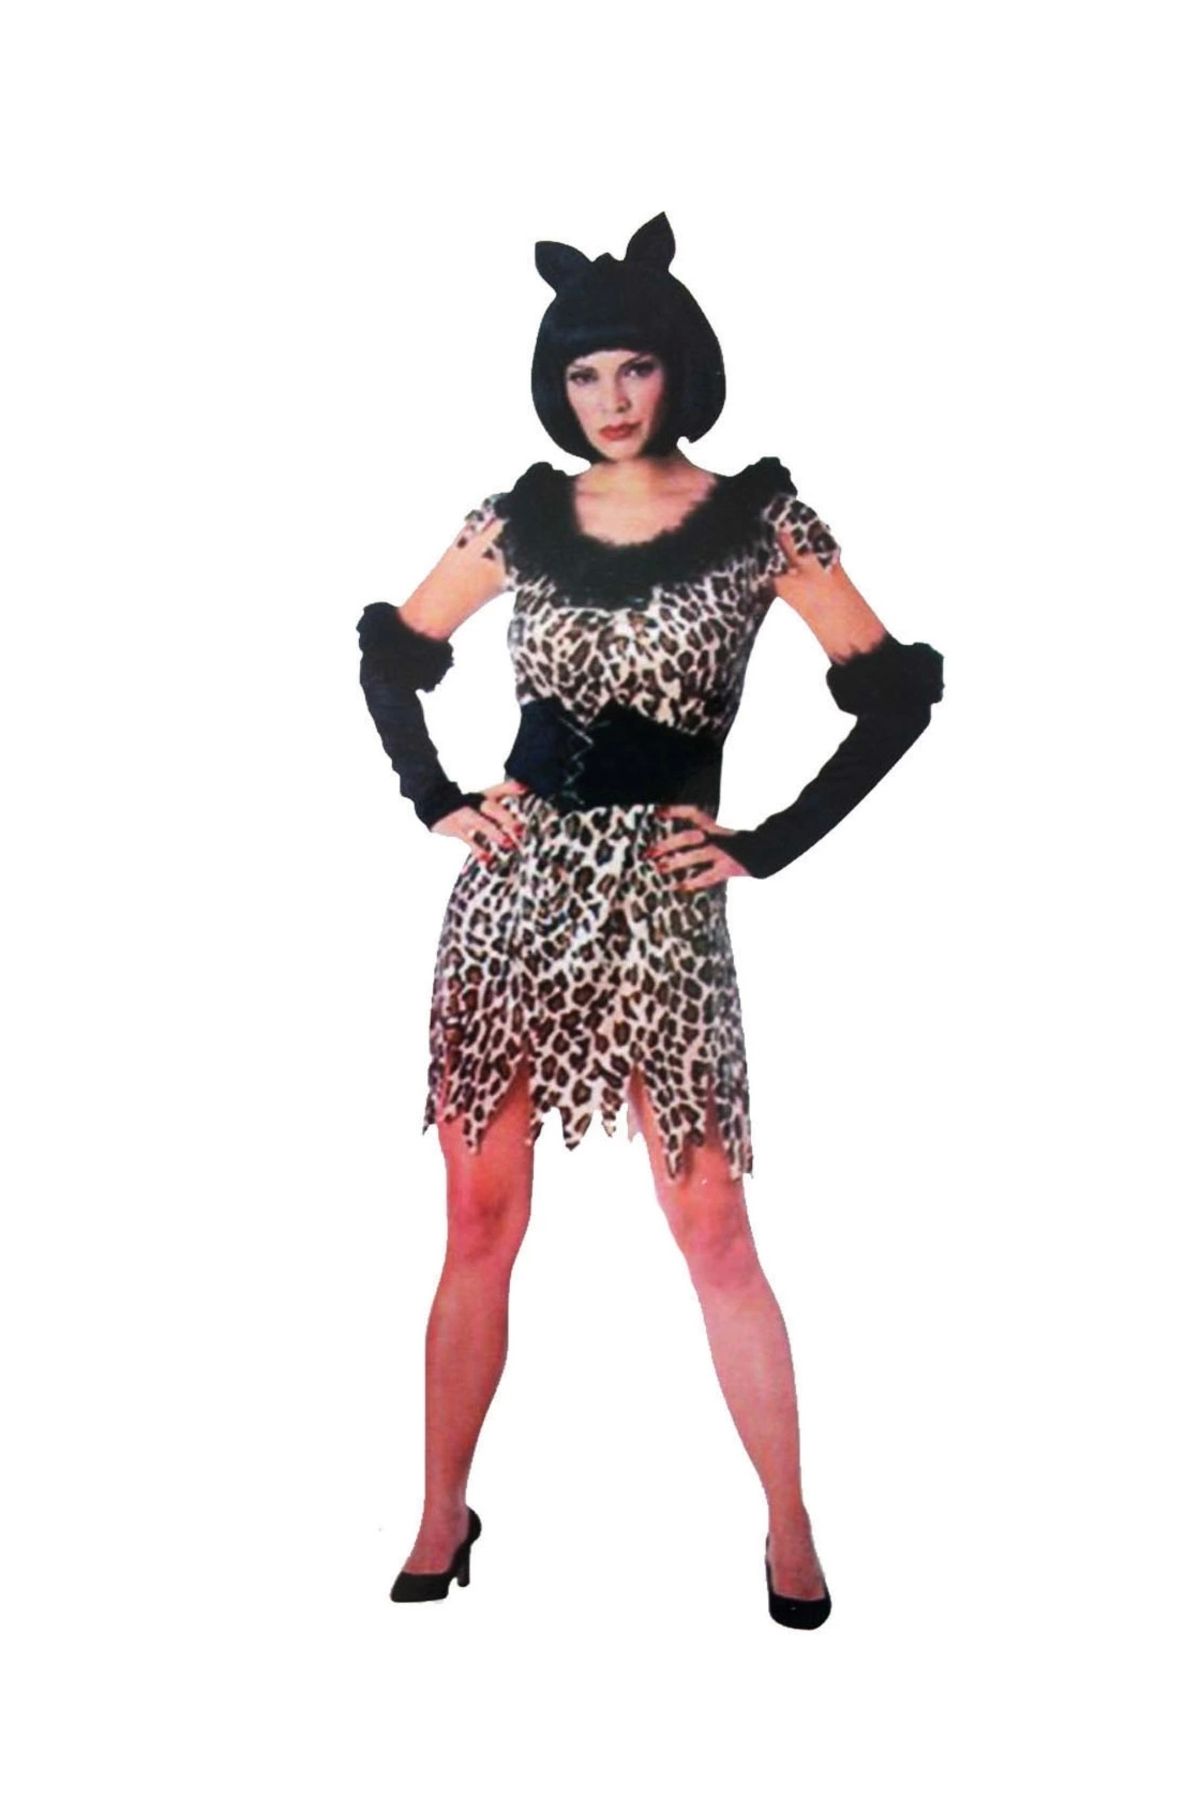 Go İthalat Yetişkin Leopar Kostümü - Kedi Kız Kostümü - Taş Devri Kostümü (4462)